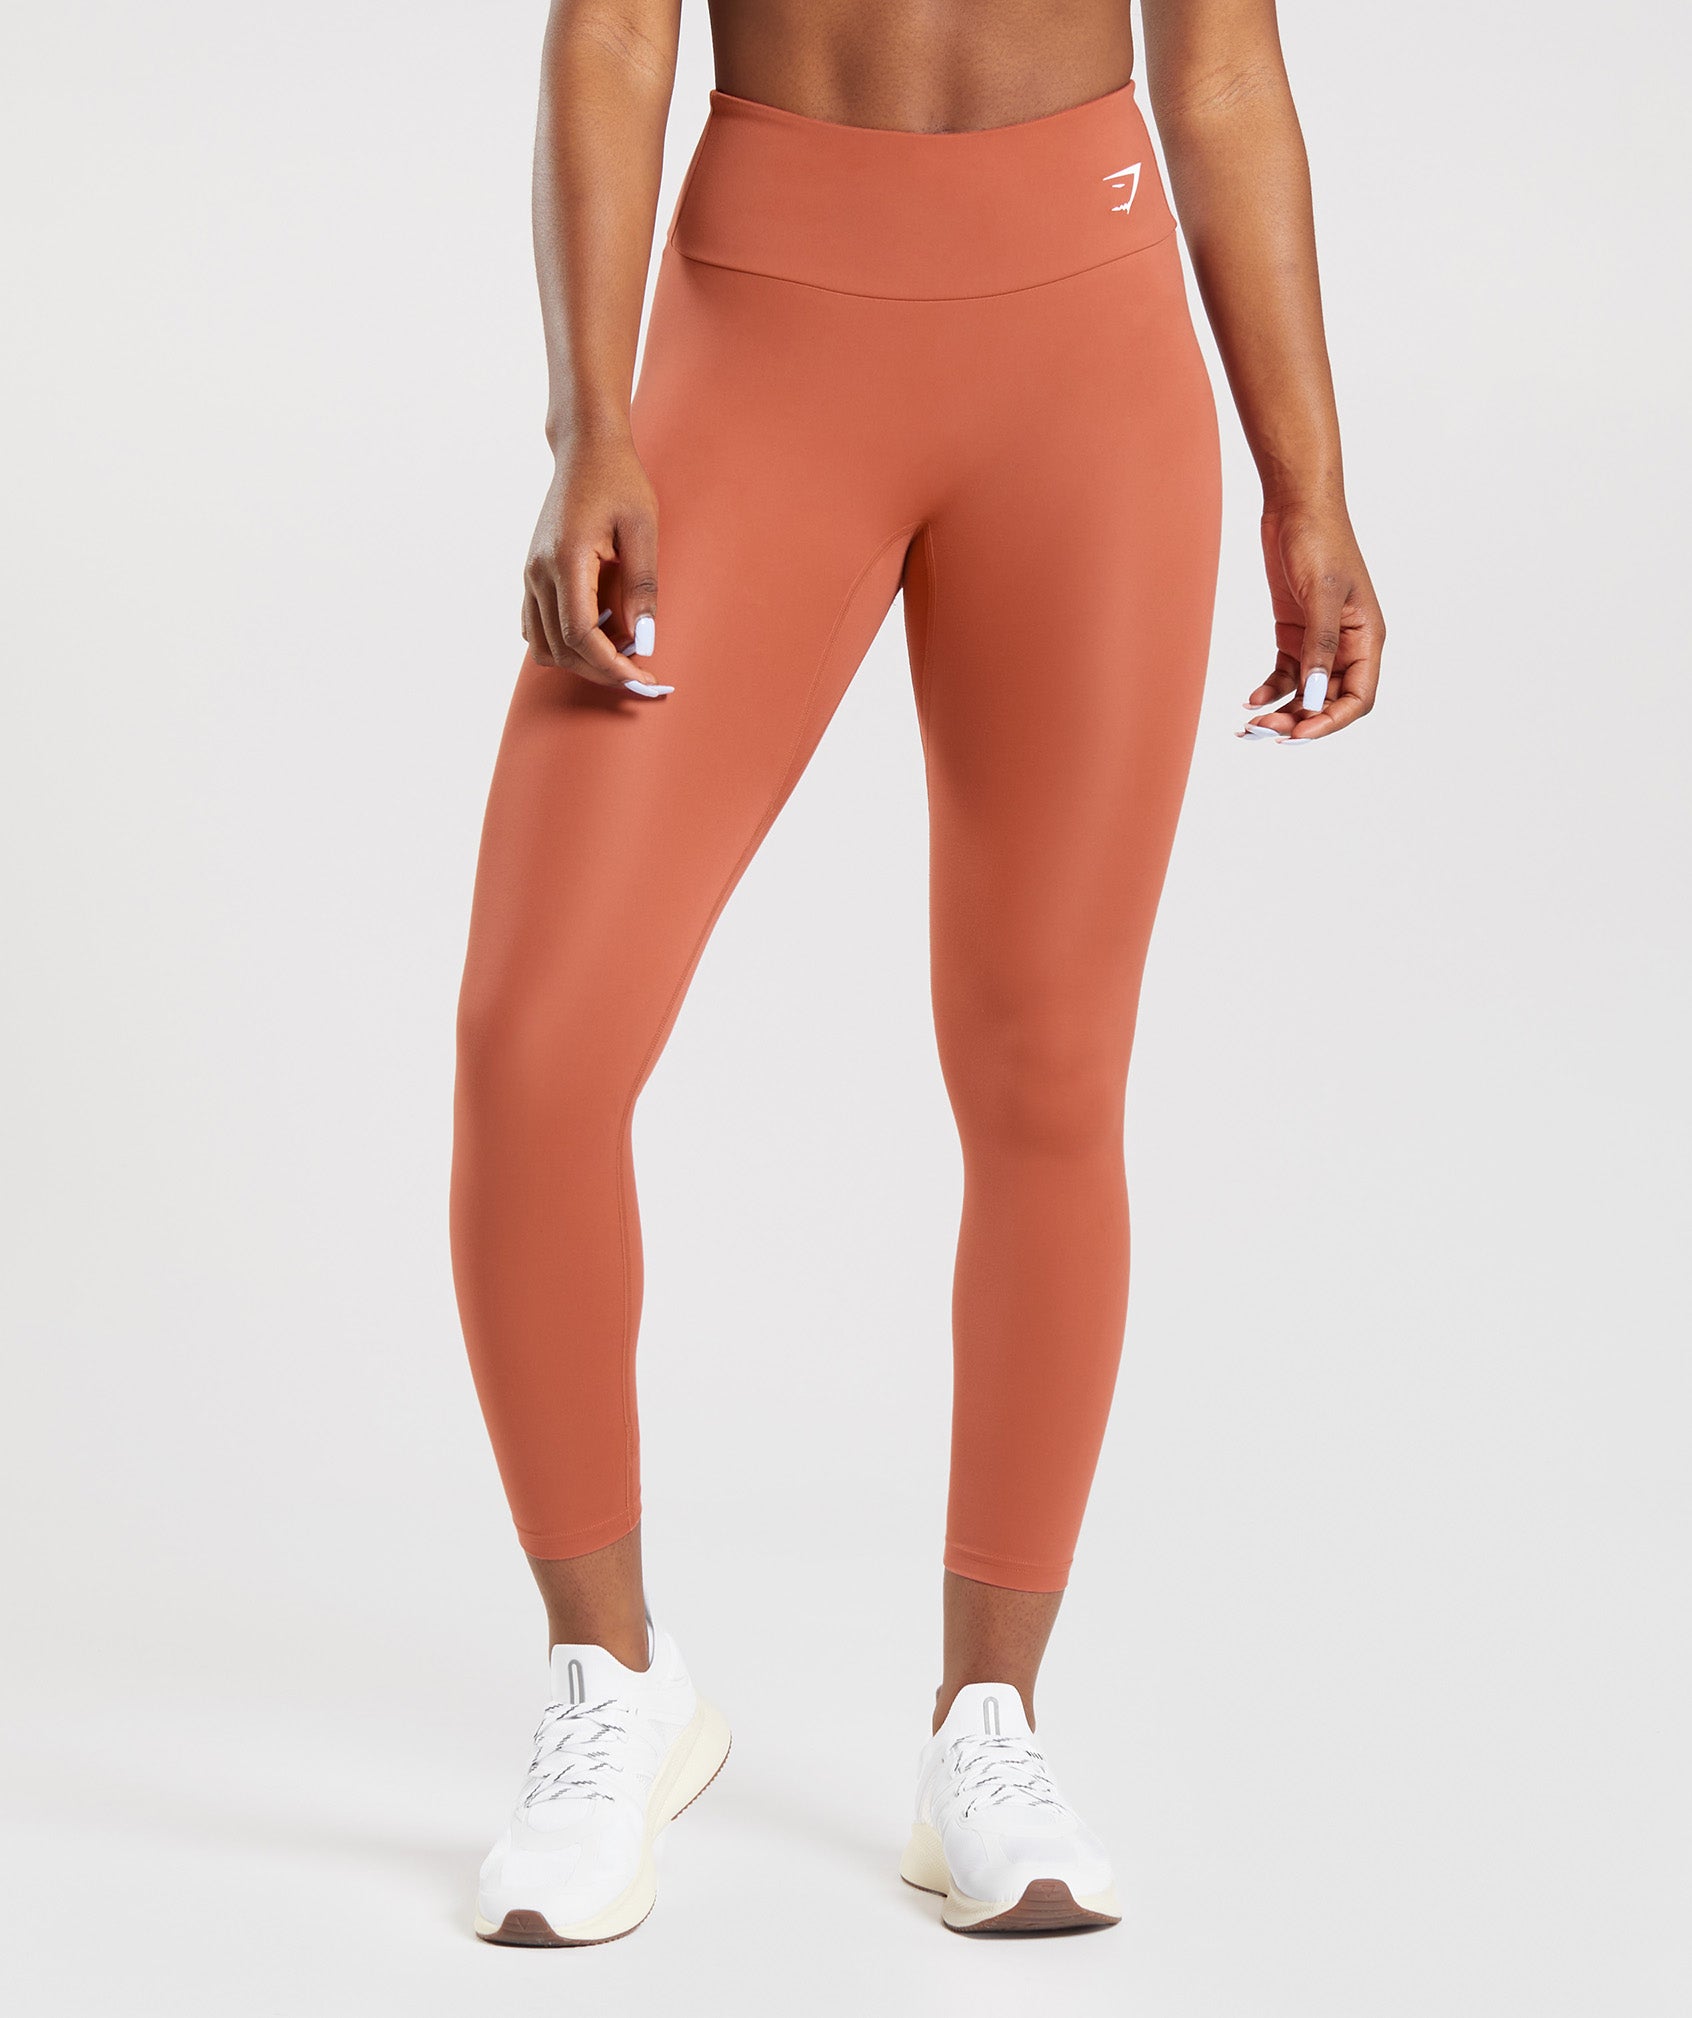 Womens Nike 7/8 Training Lazer Cut Tights XL Orange Tight Gym